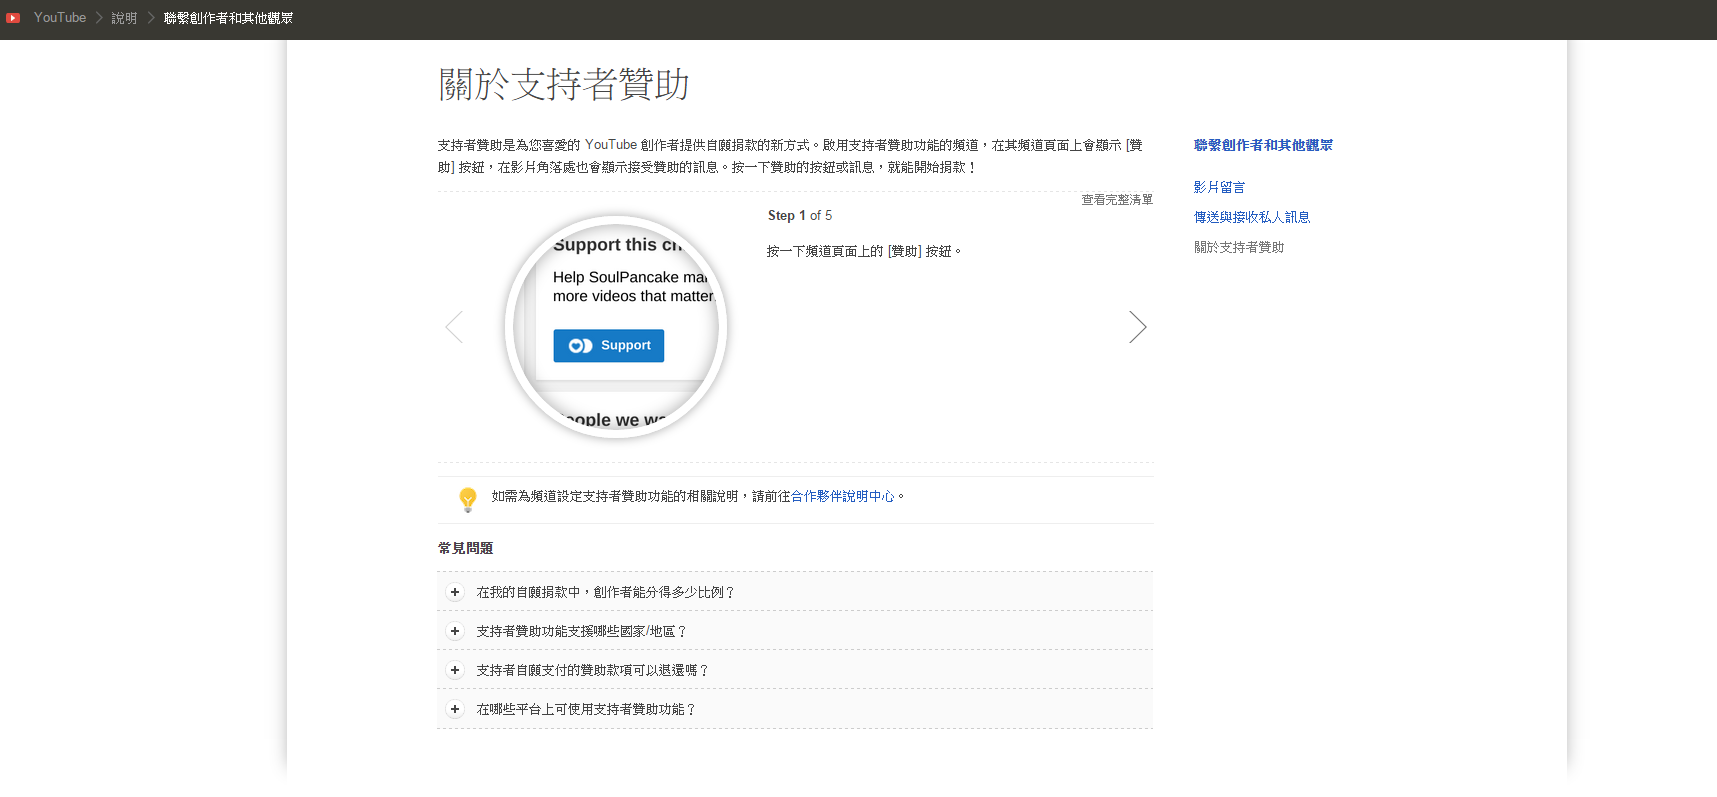 目前台灣還沒有展開YouTube Fan Funding 功能，但已有中文說明。